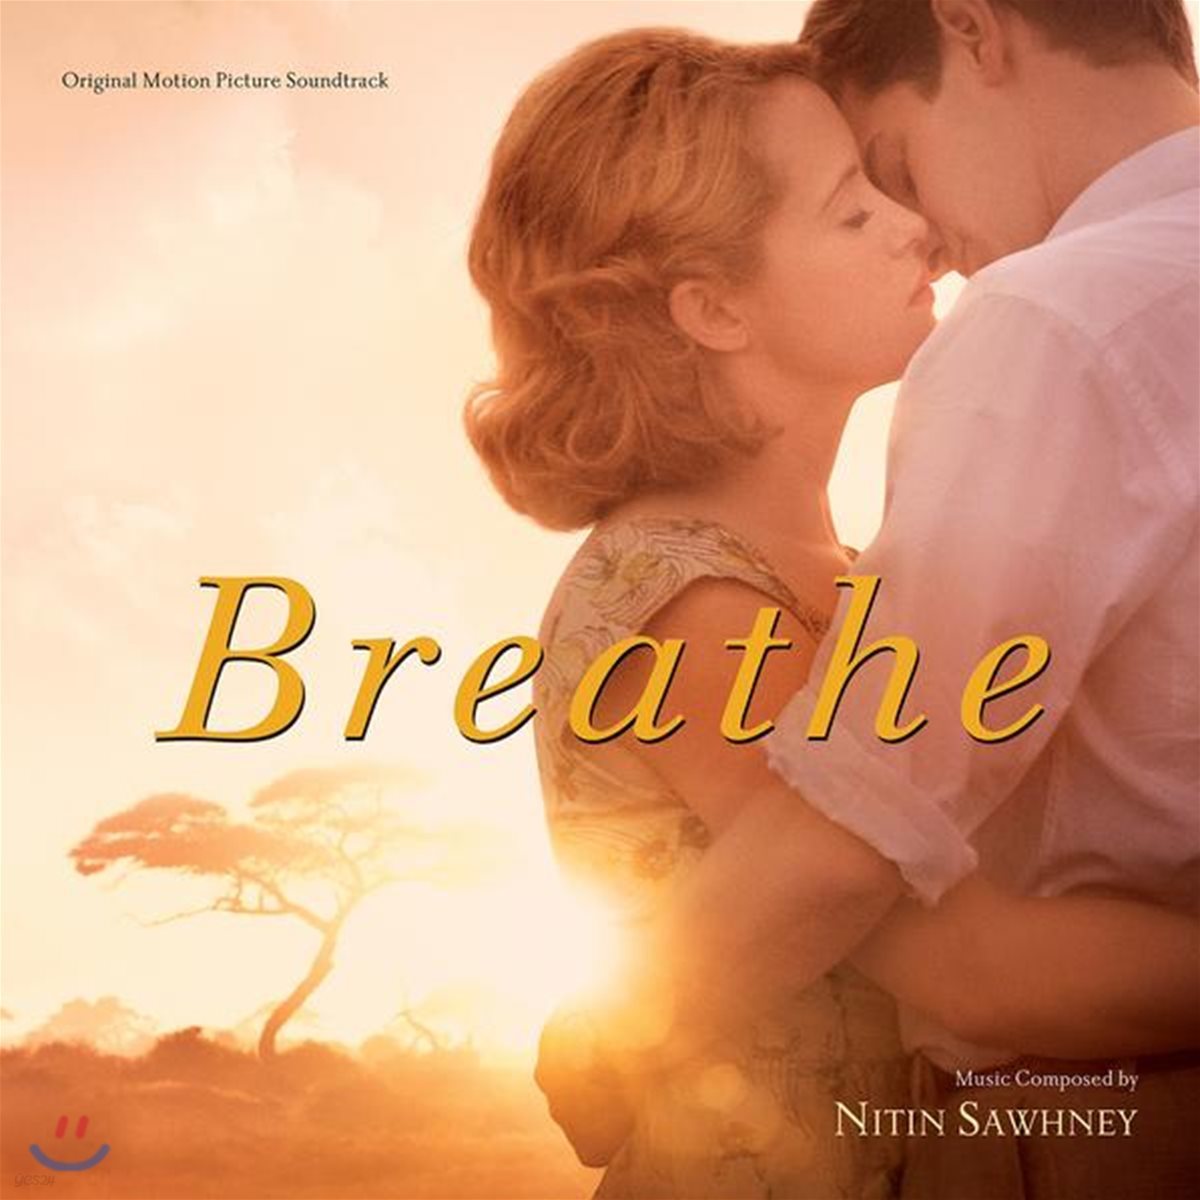 달링 영화음악 (Breathe OST by Nitin Sawhney 니틴 소니)